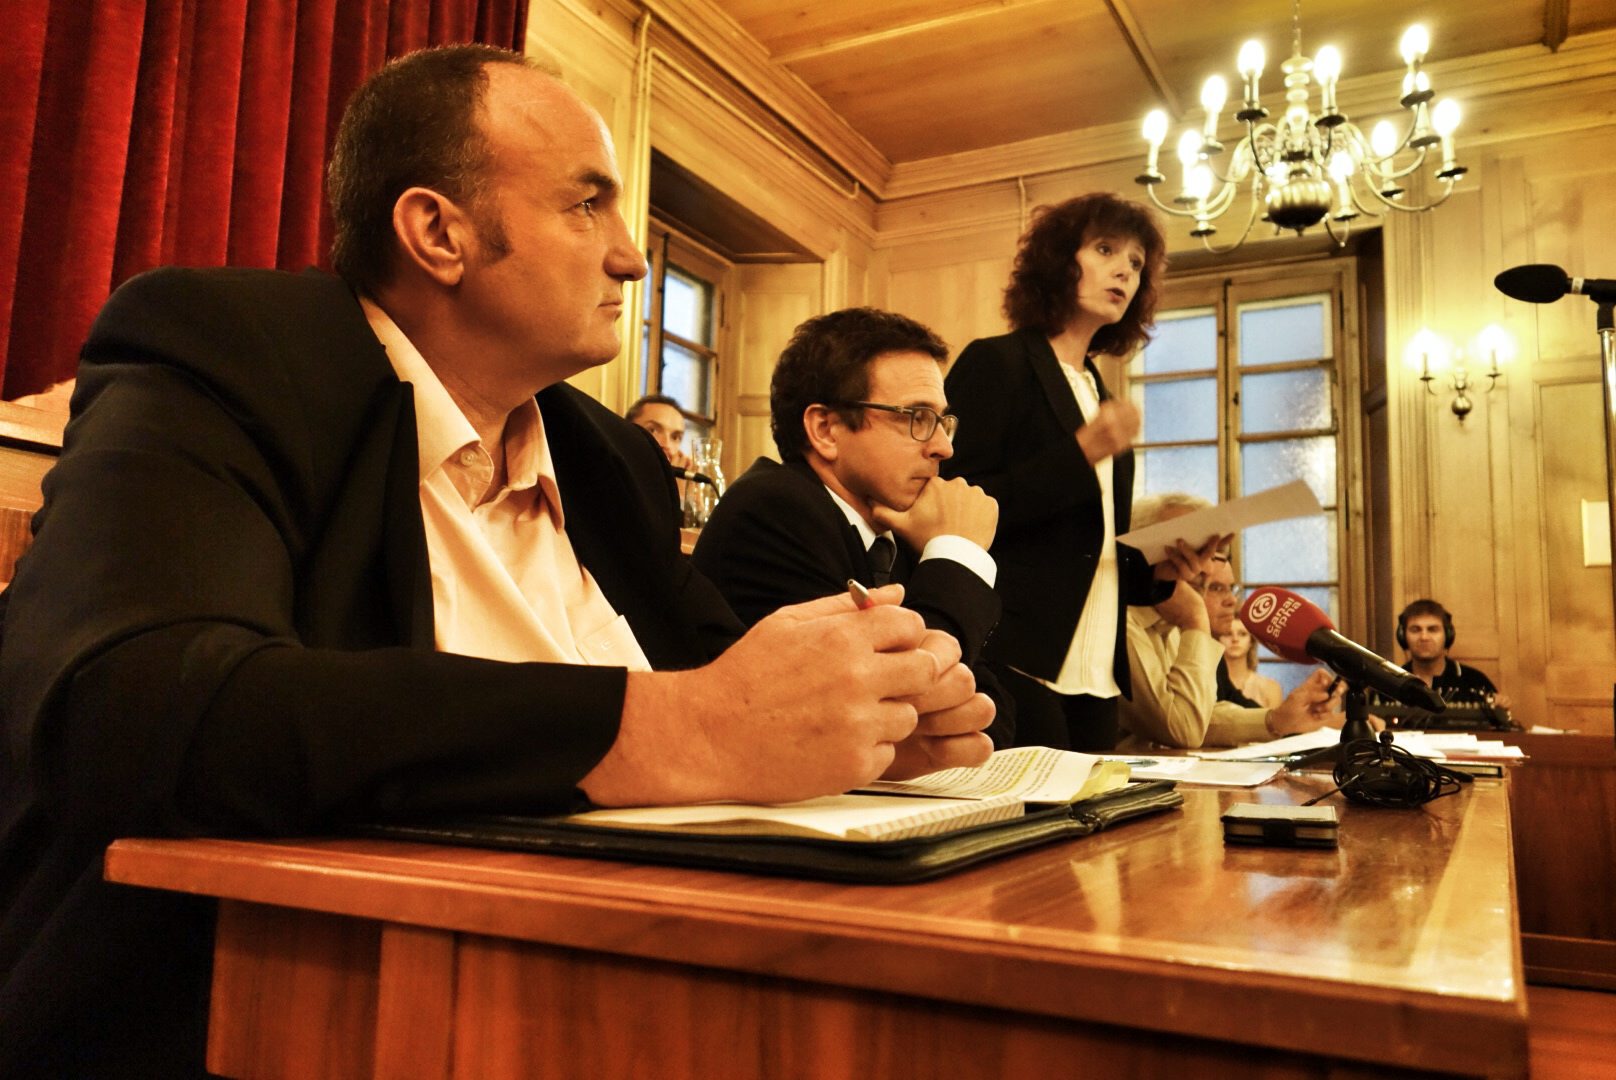 Le Conseil communal de La Chaux-de-Fonds, avec Jean-Charles Legrix au premier plan et Nathalie Schallenberger délivrant son message.